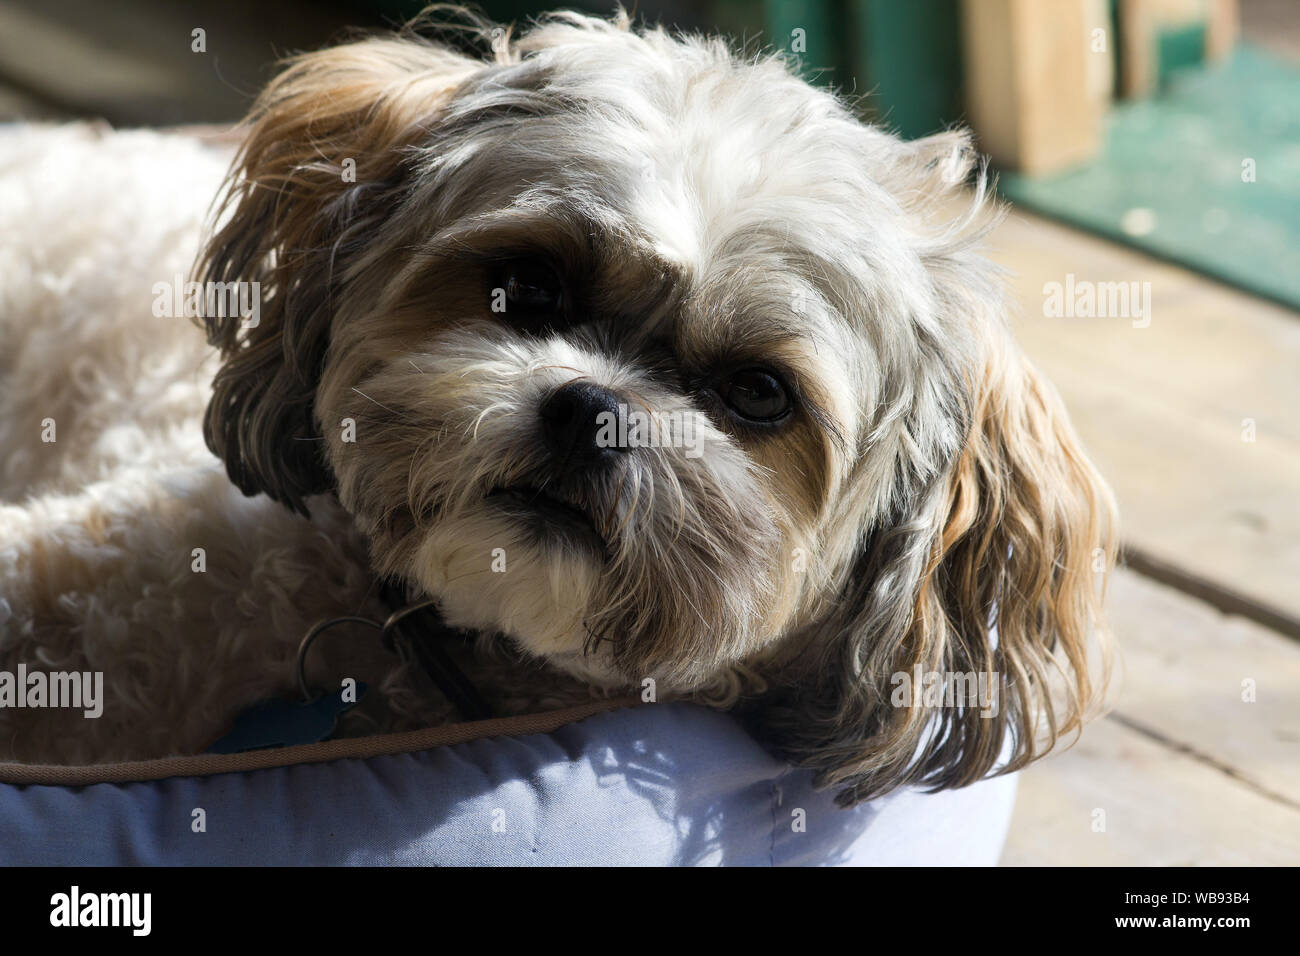 Libre d'un mignon chien,Shih Tzu Bichon Frise race mélangée looking at camera Banque D'Images